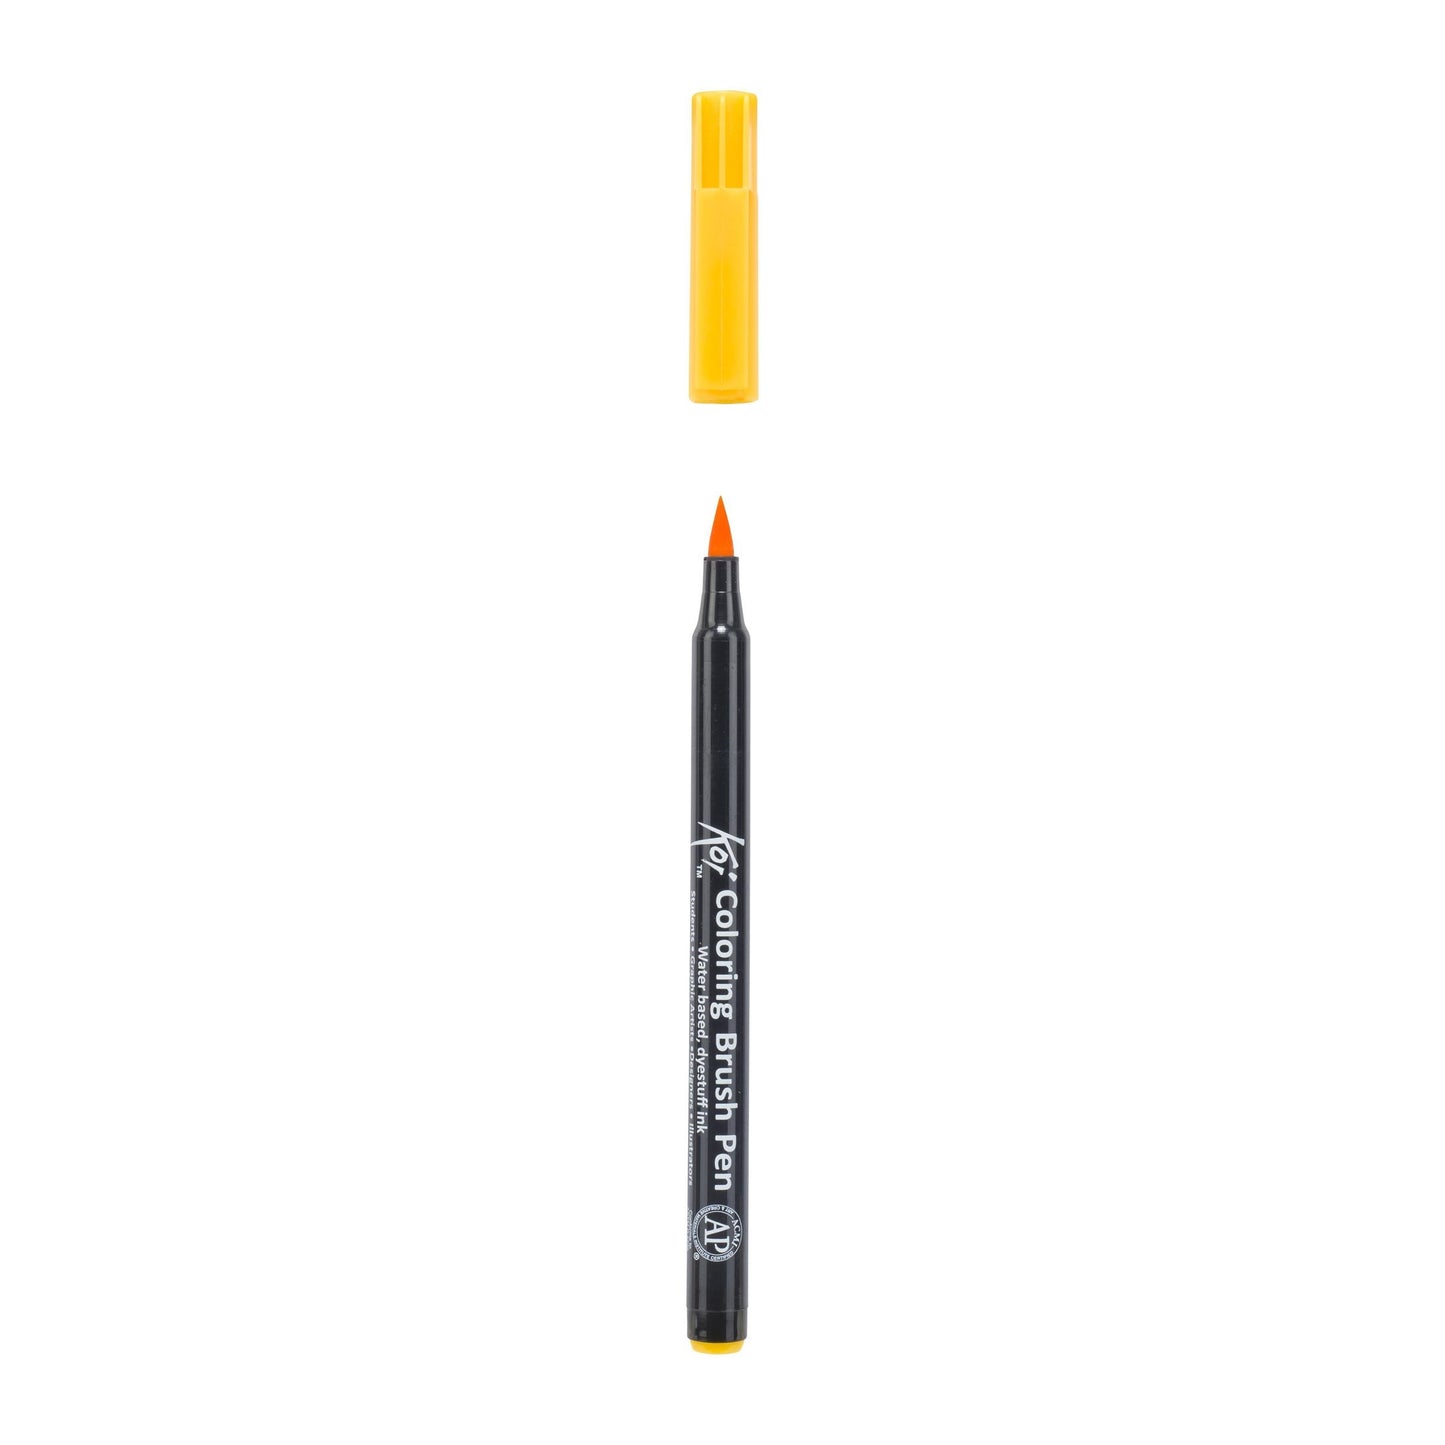 Koi Coloring Brush Pen deep yellow akvareltusch